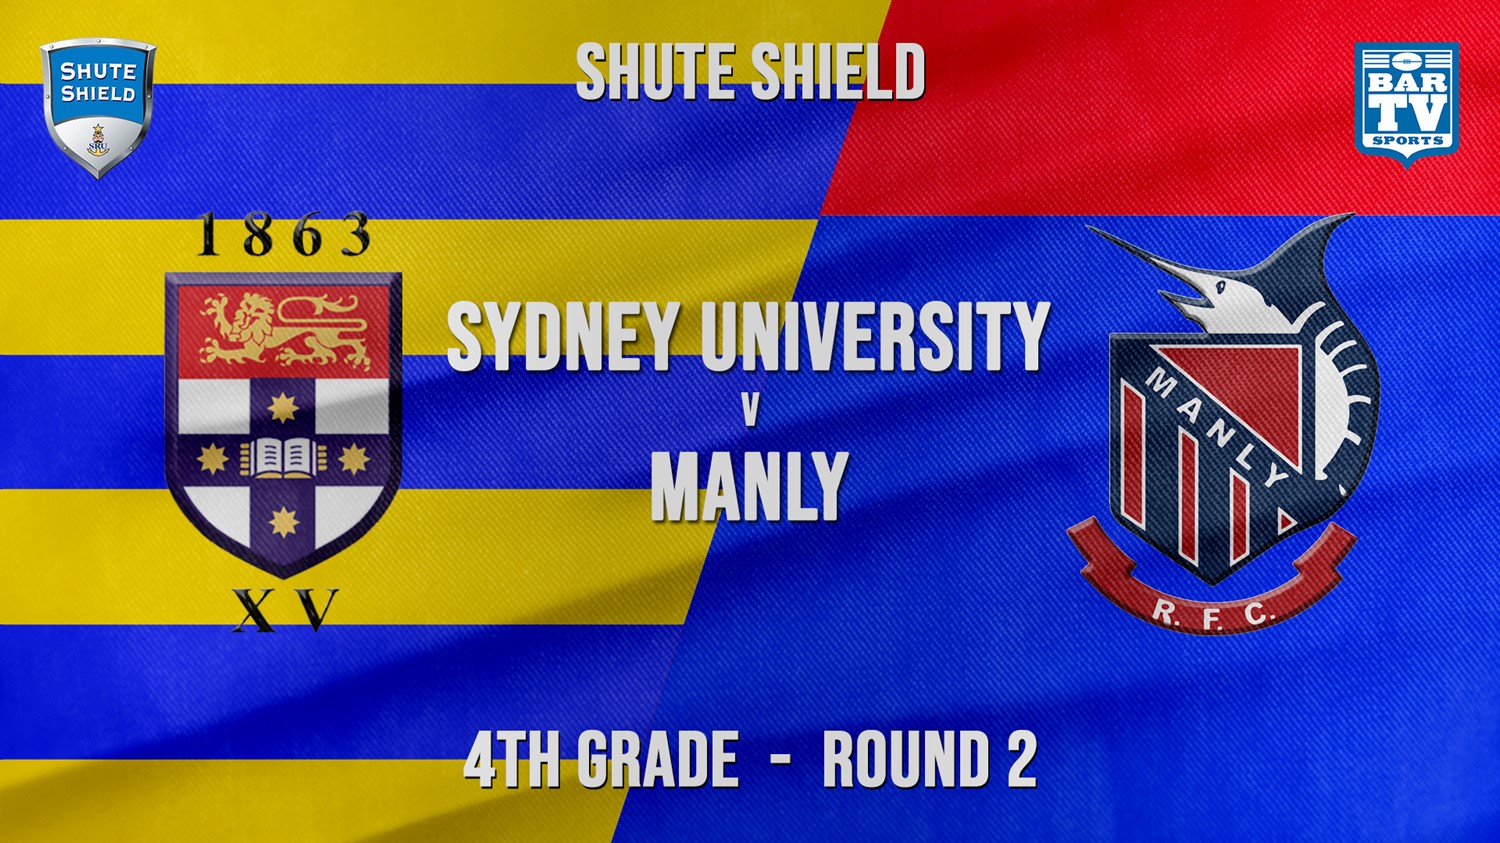 Shute Shield Round 2 - 4th Grade - Sydney University v Manly Minigame Slate Image